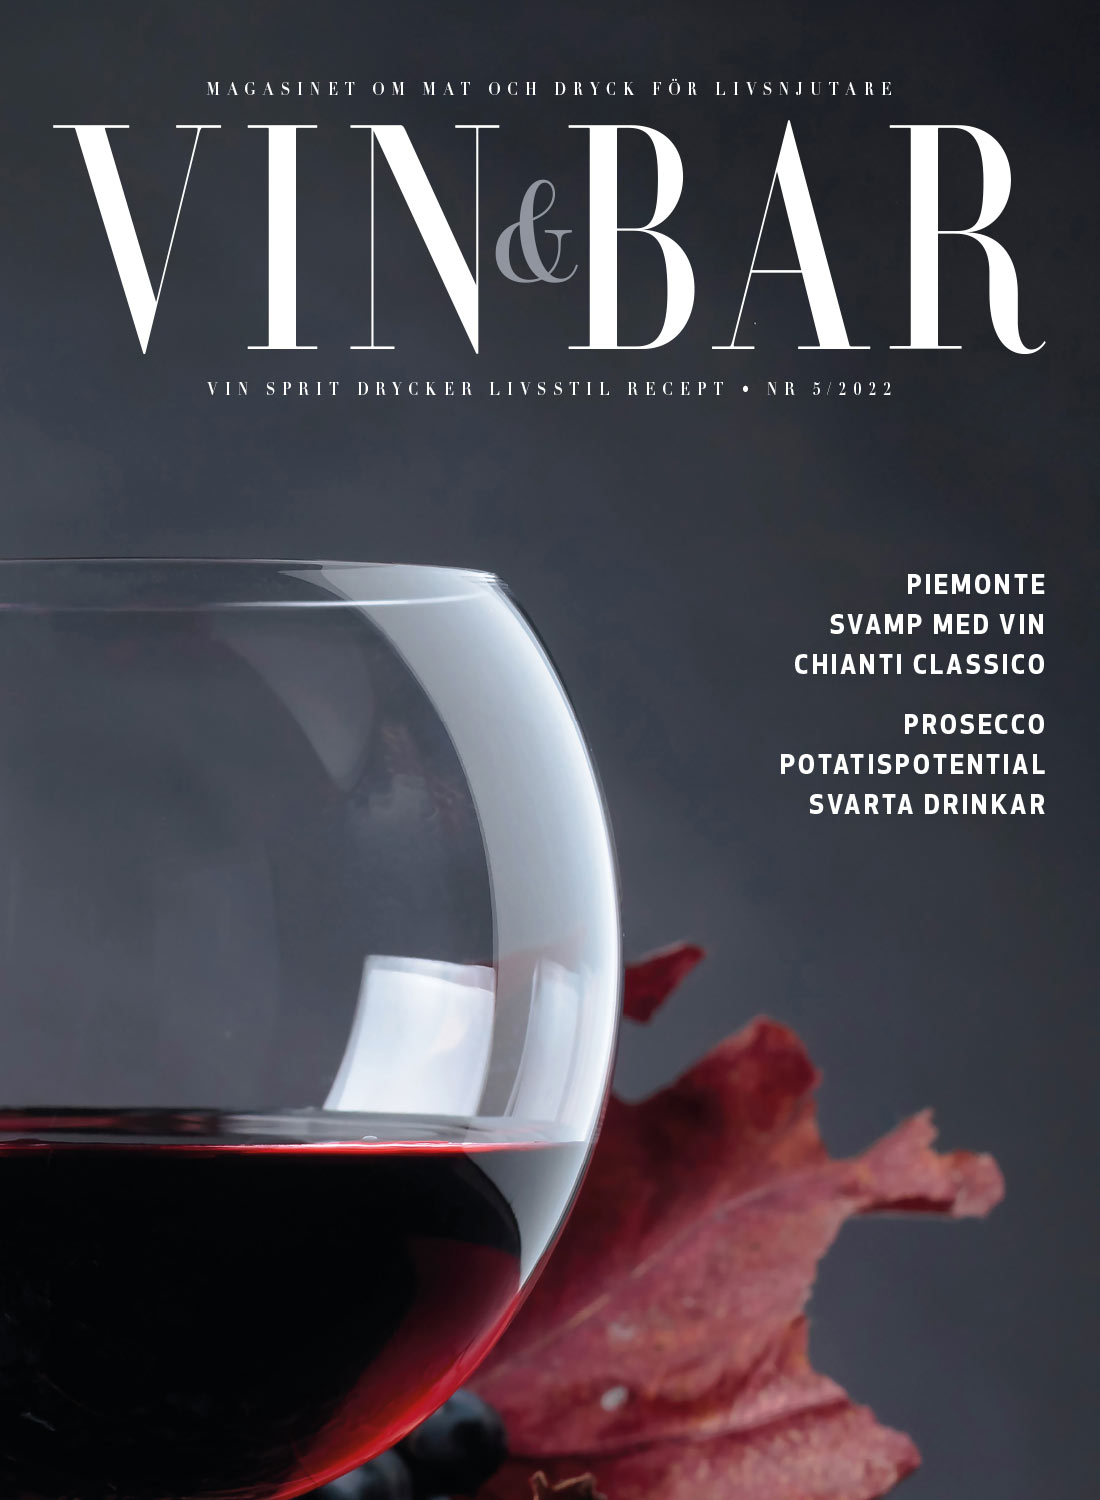 Vin och Bar tidning 2020 nummer 2